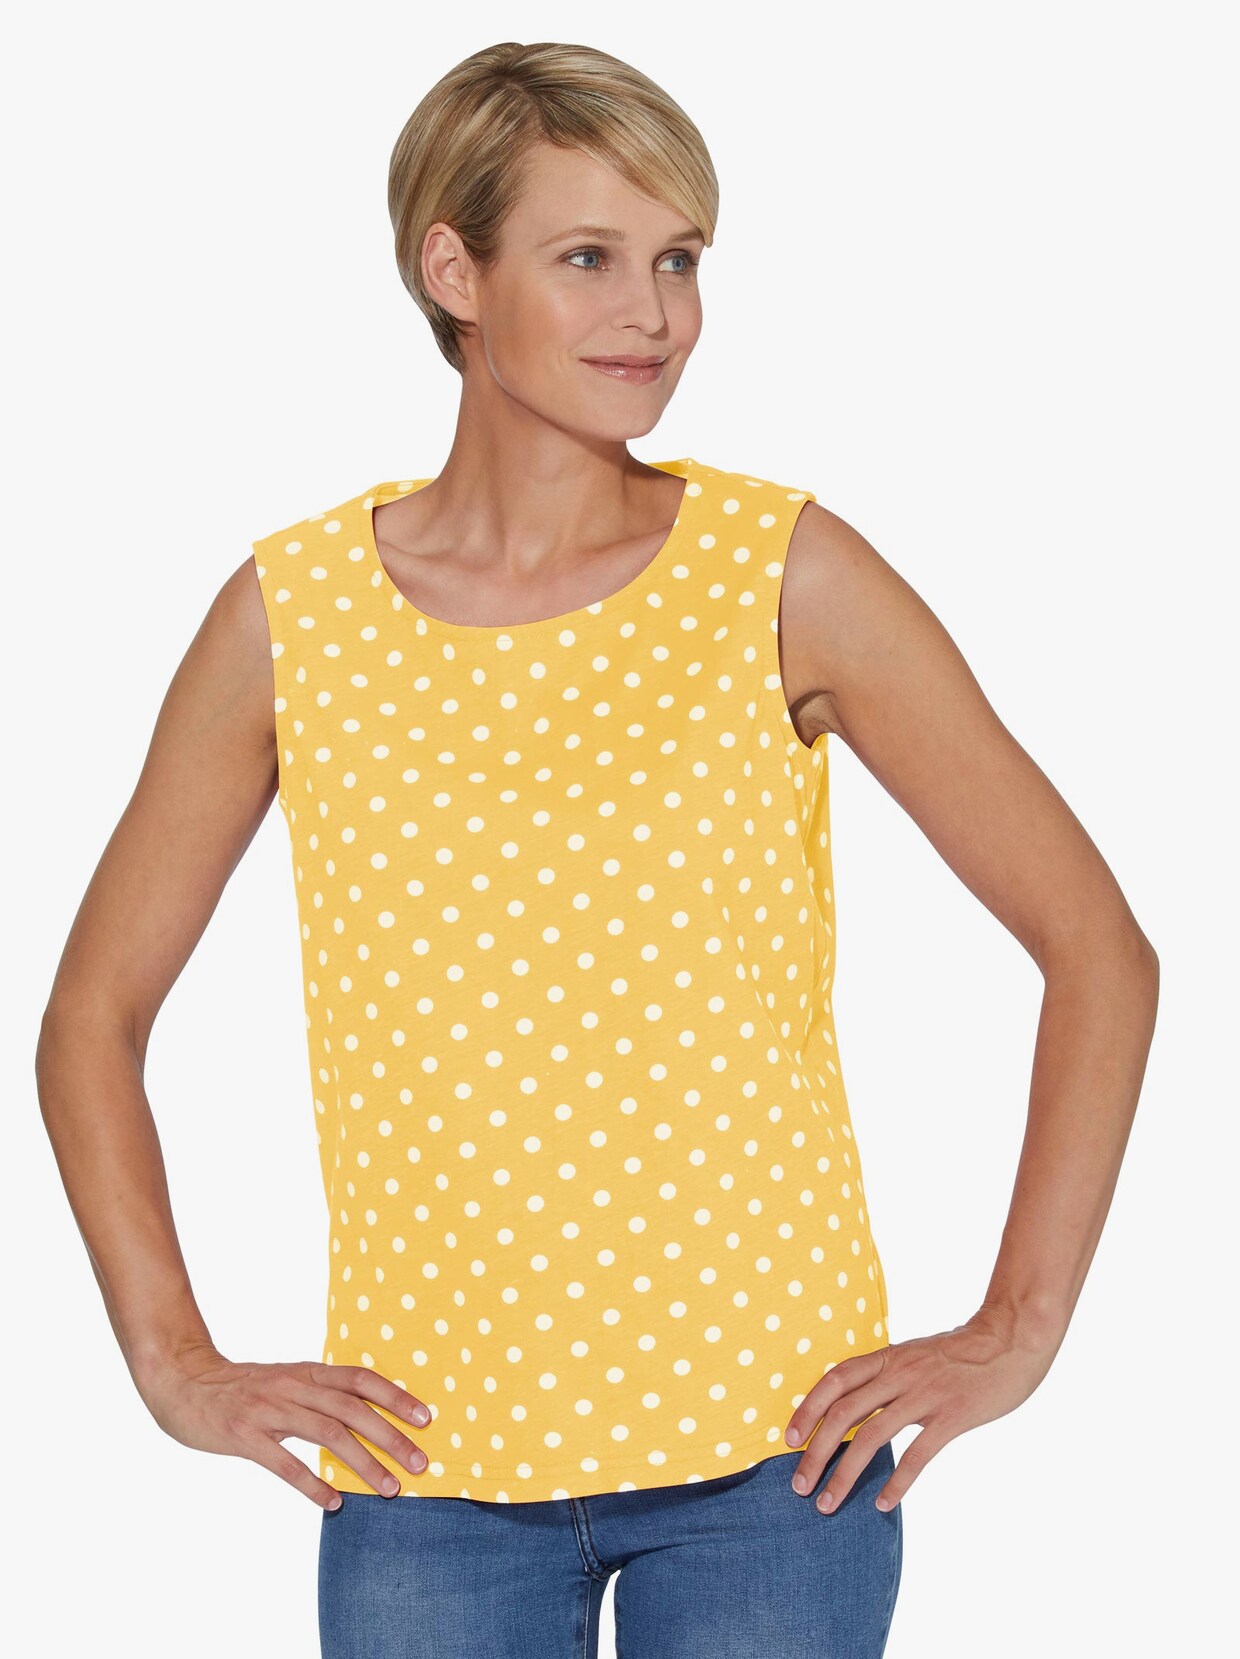 Shirttop - gelb + gelb-getupft